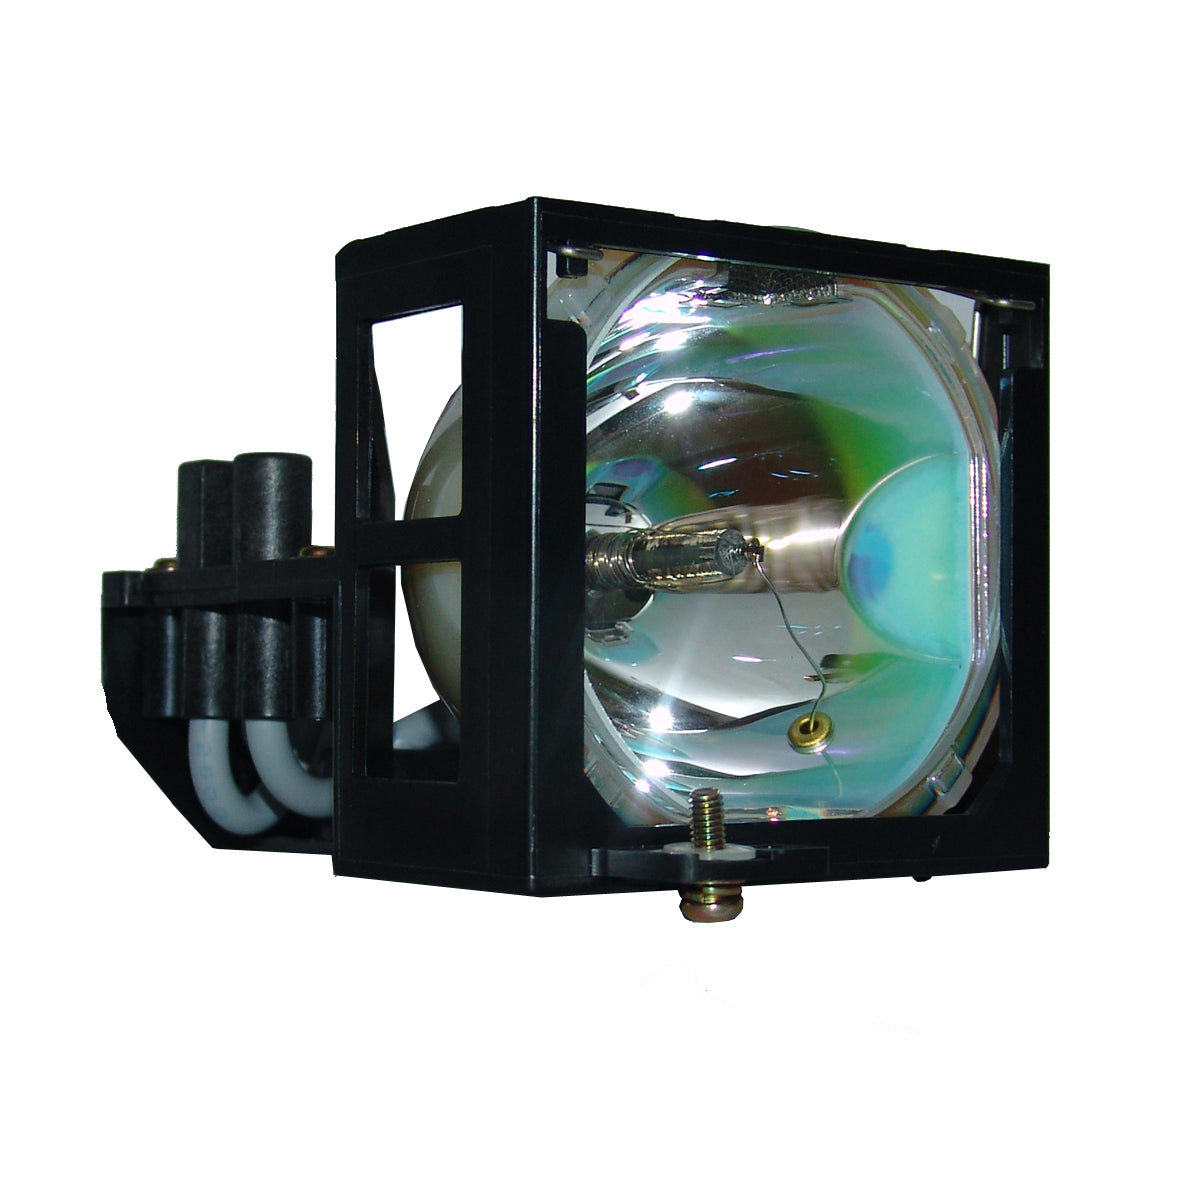 PLUS PUP110 Compatible Projector Lamp Module